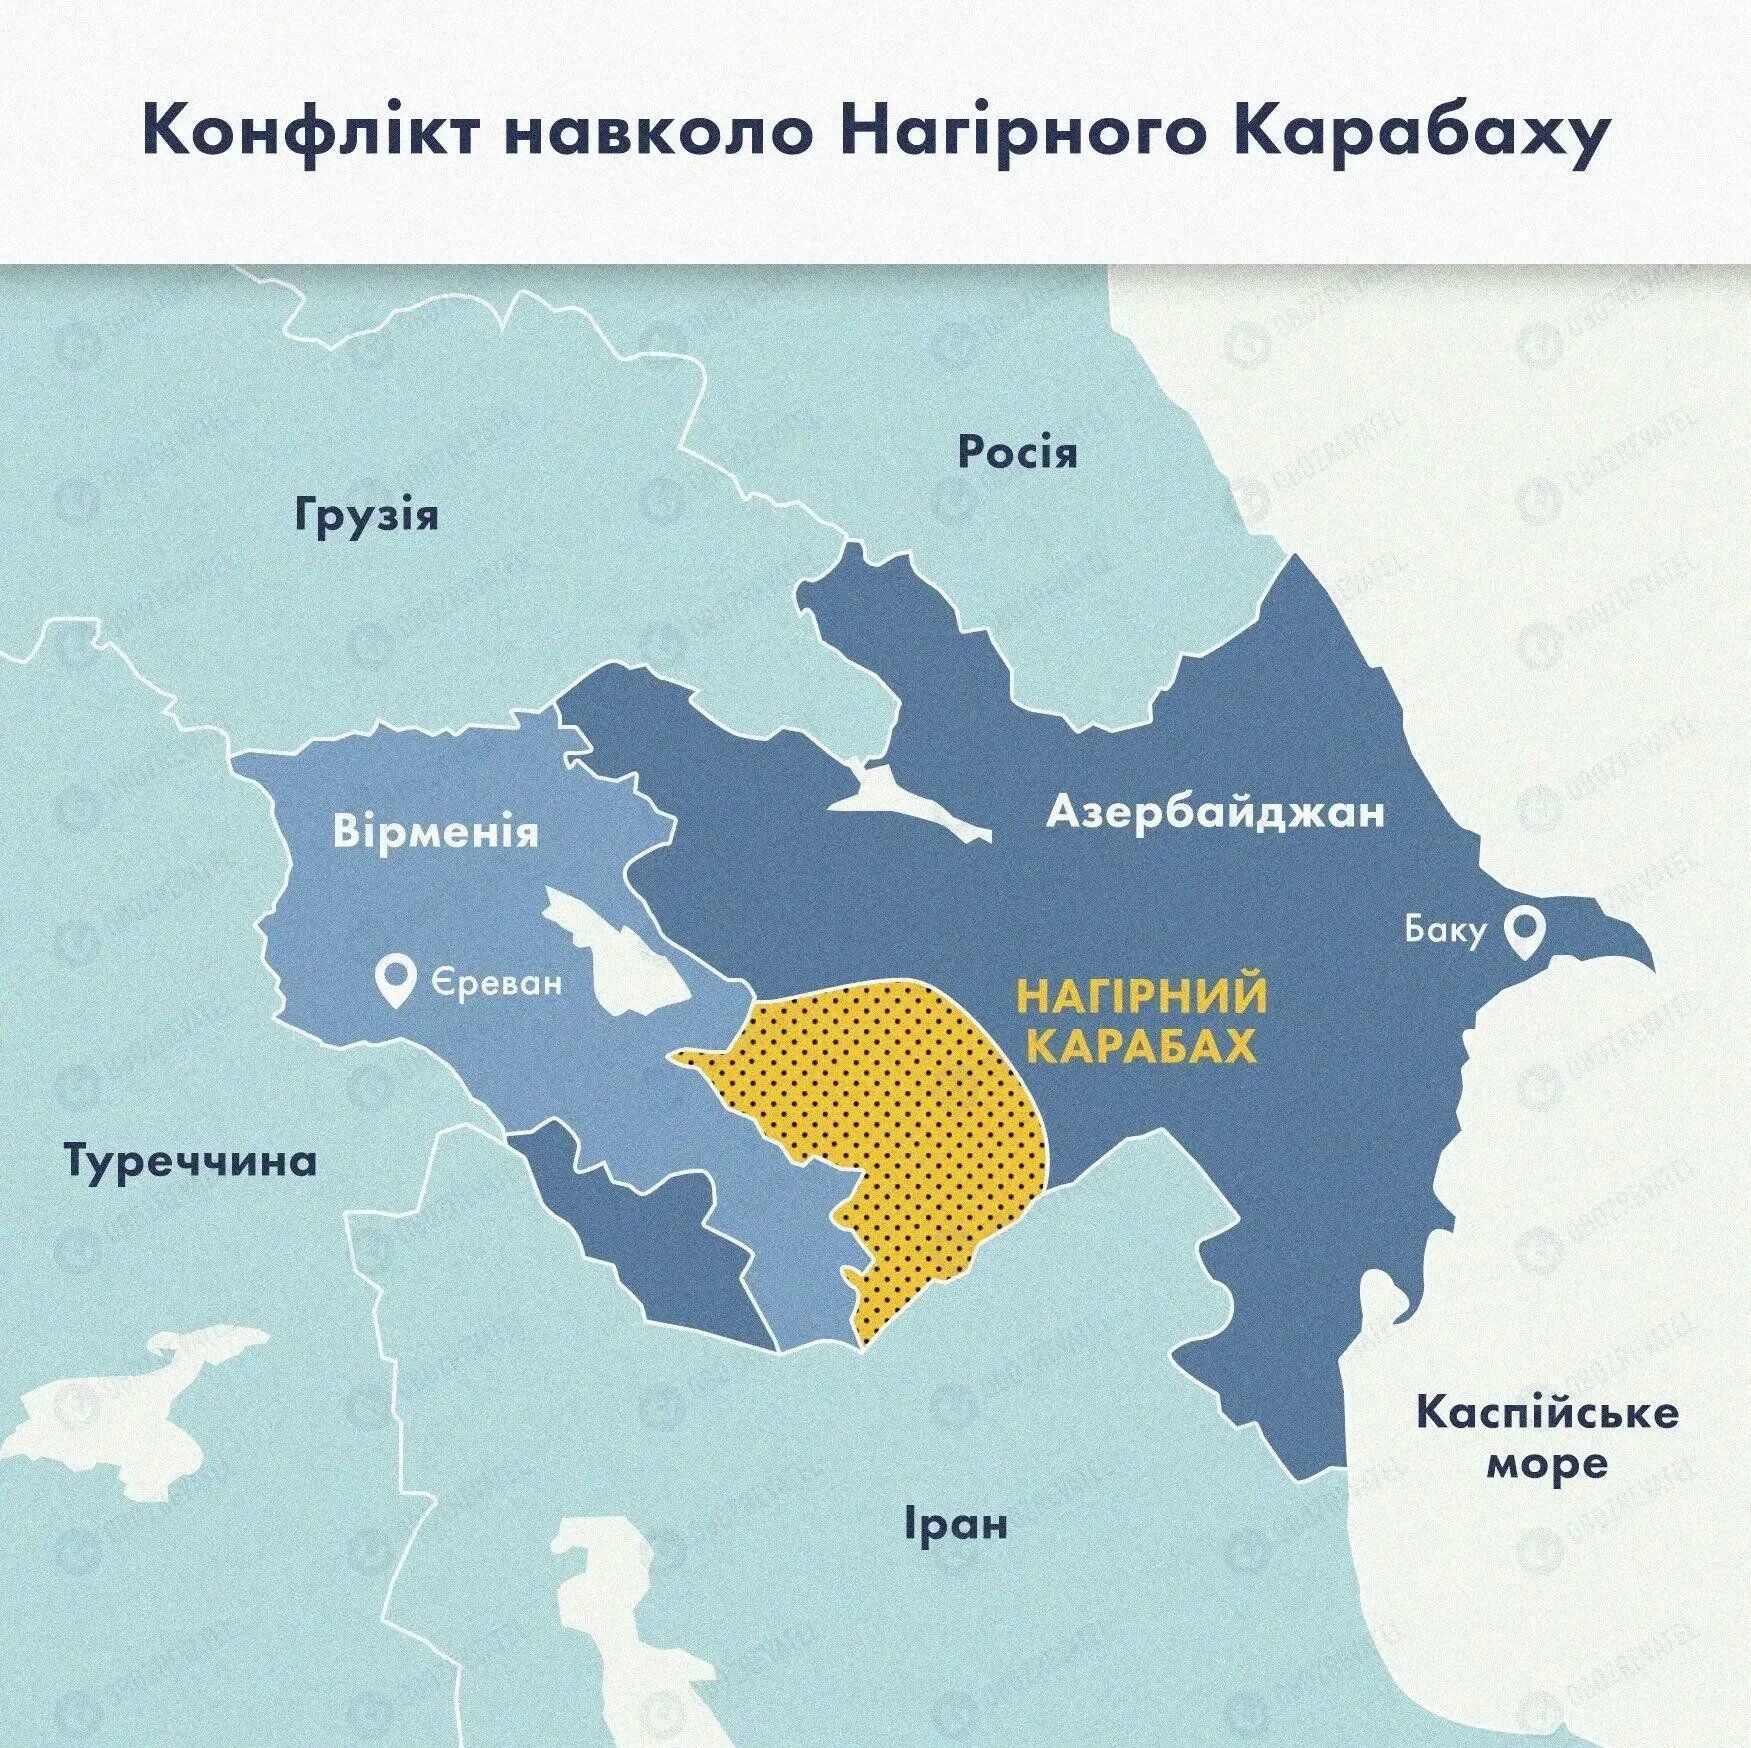 Карта щодо конфлікту в Нагірному Карабасі